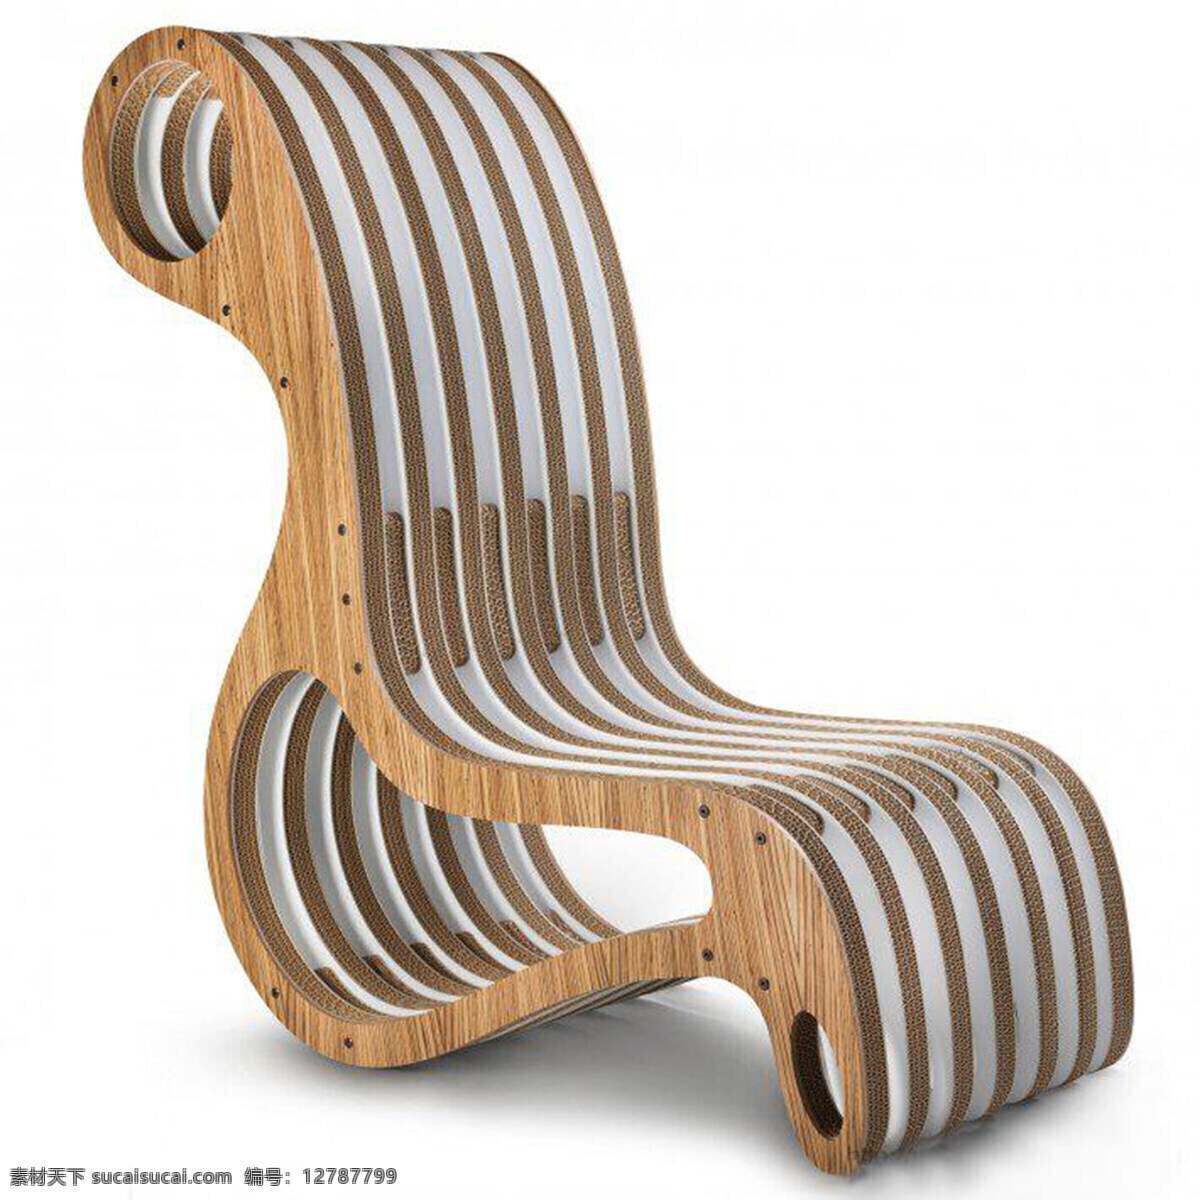 创意 x2chair 扶手椅 产品设计 工业设计 家居 简约 沙发 生活 椅子